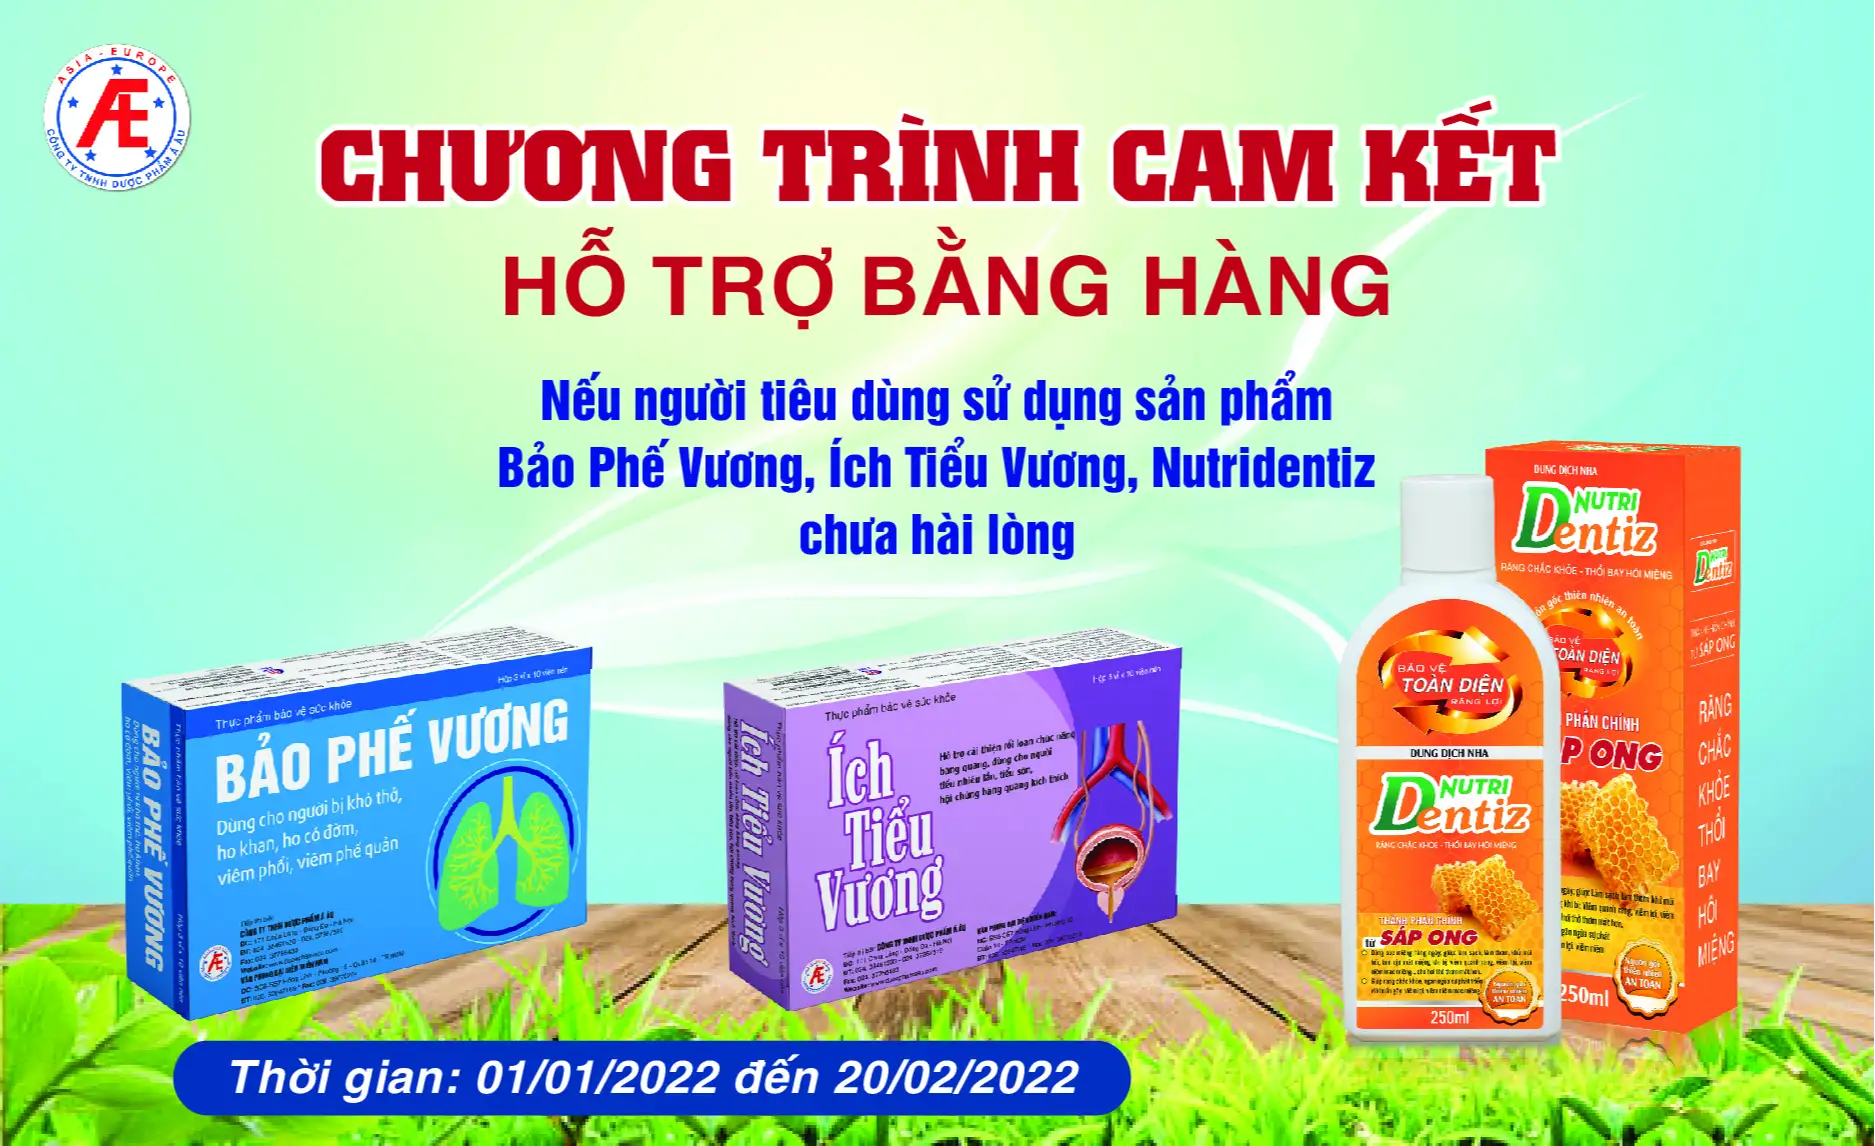 chuong-trinh-cam-ket-ho-tro-bang-hang-thang-1-2022.webp